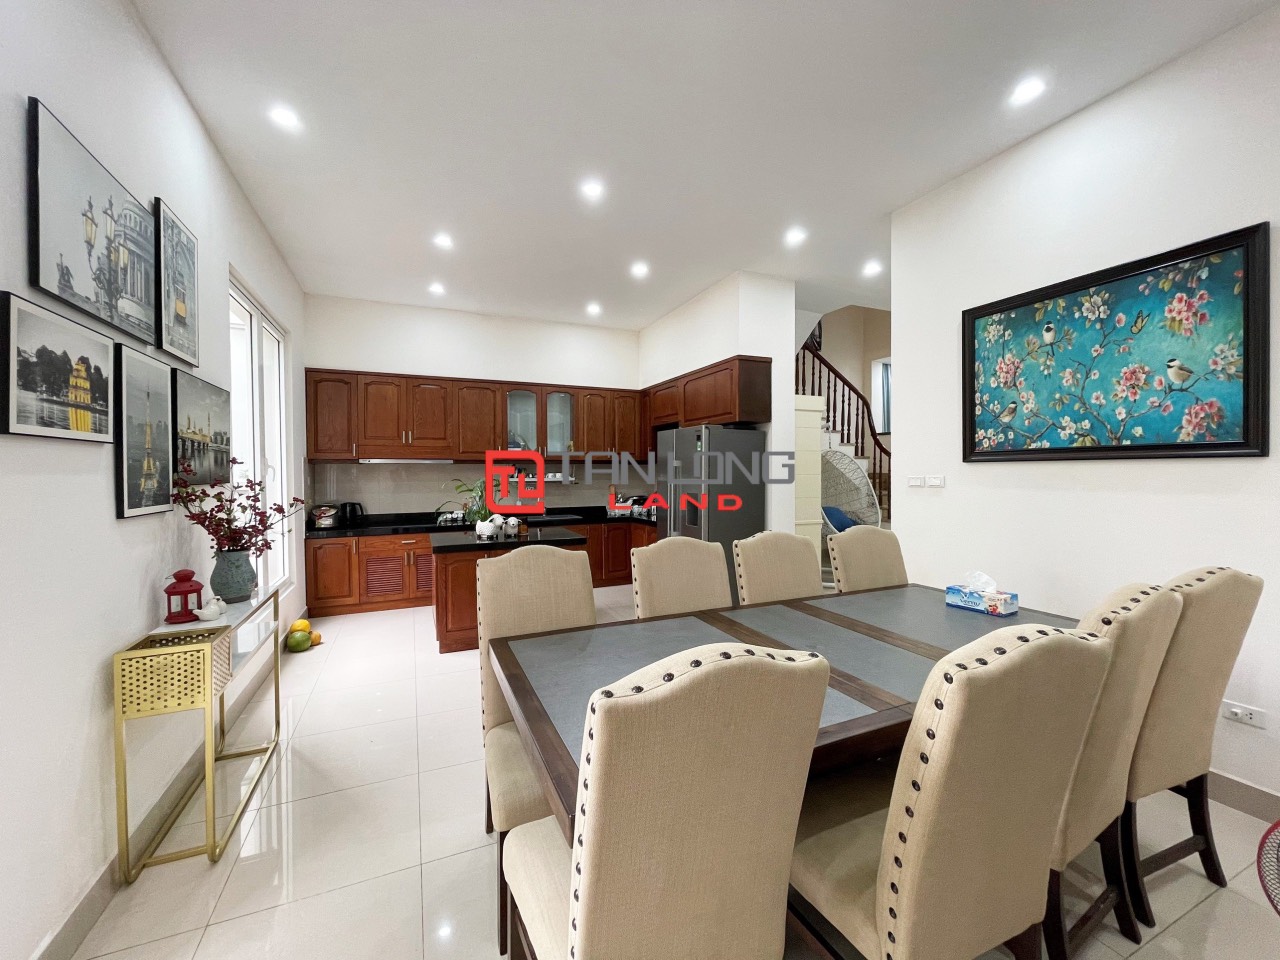 5 Bedrooms Duplex Villa for Rent with Reasonable Price in Vinhomes Riverside Long Bien 5